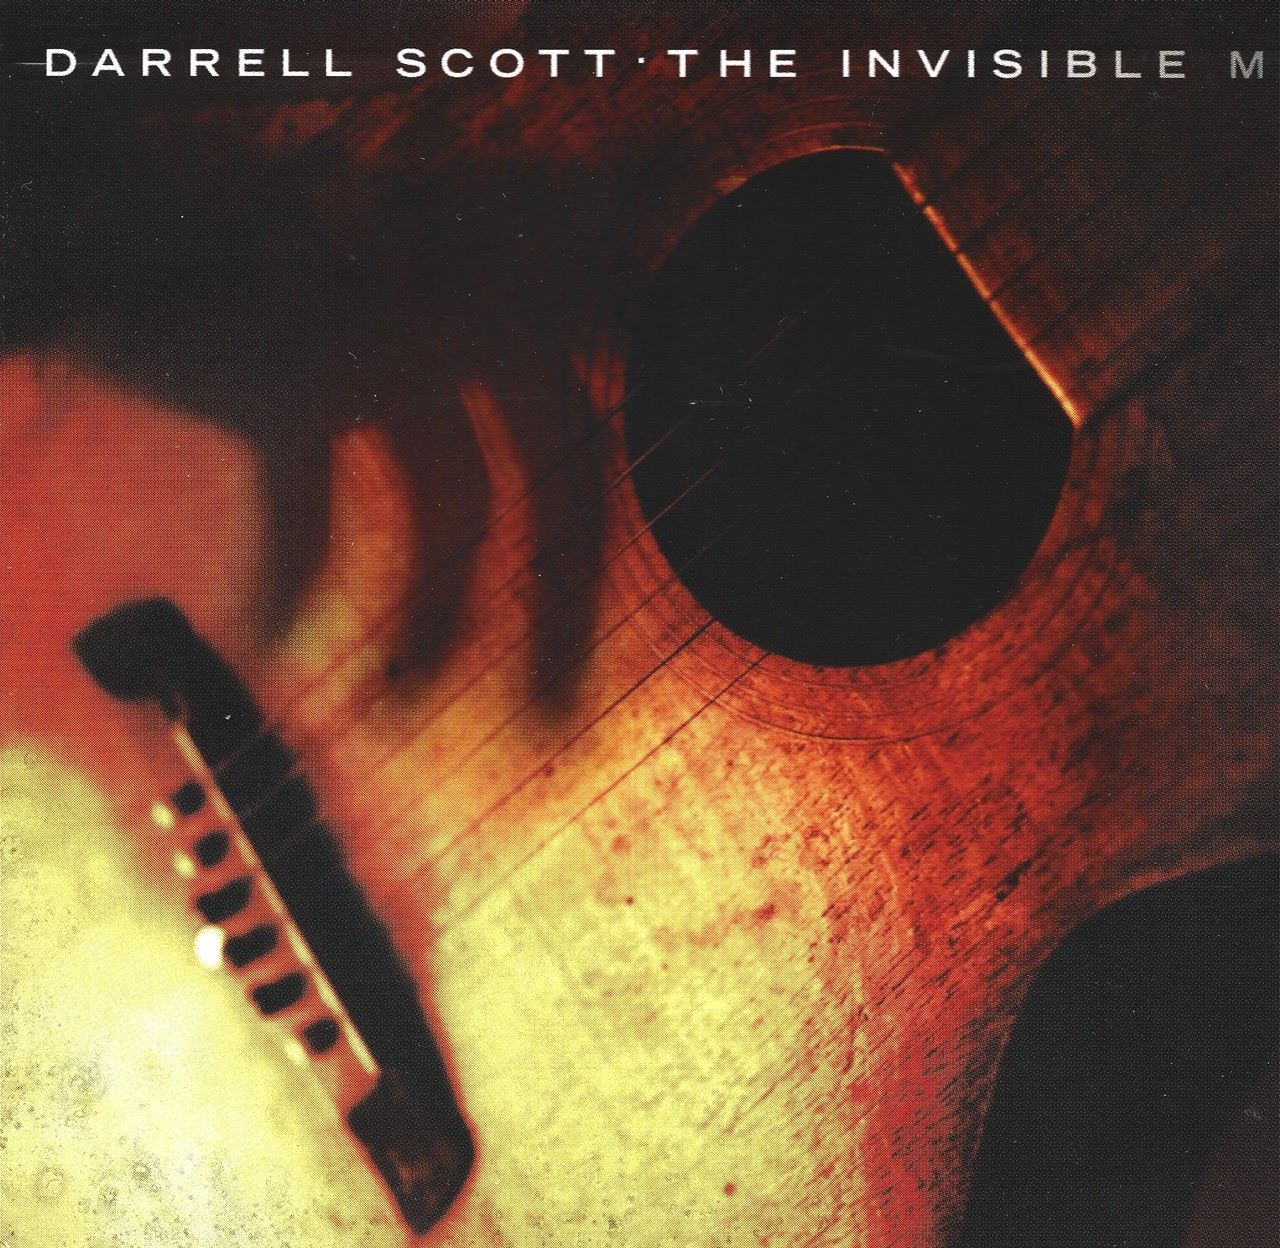 Darrell Scott – The Invisible Man cover album